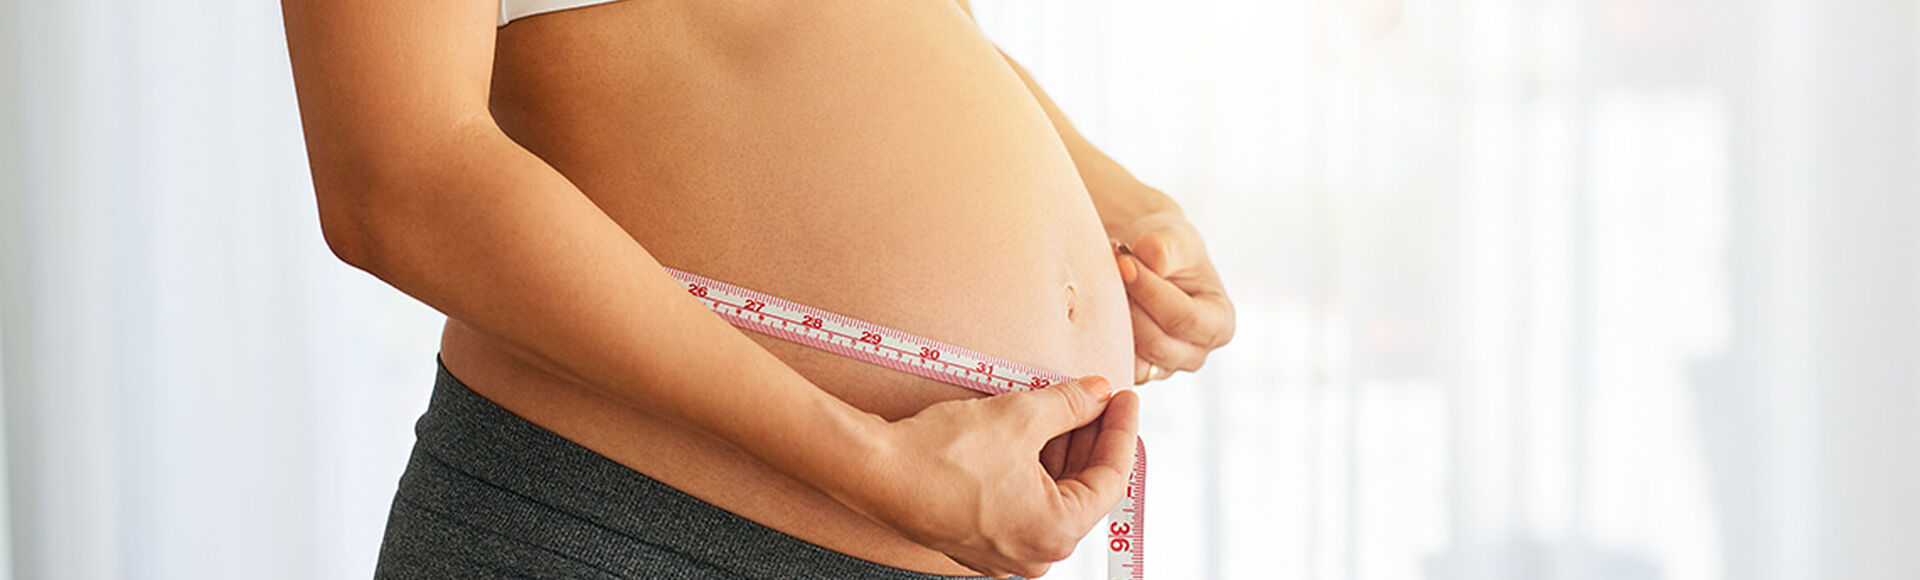 Dieta para embarazos múltiples | by Huggies Argentina